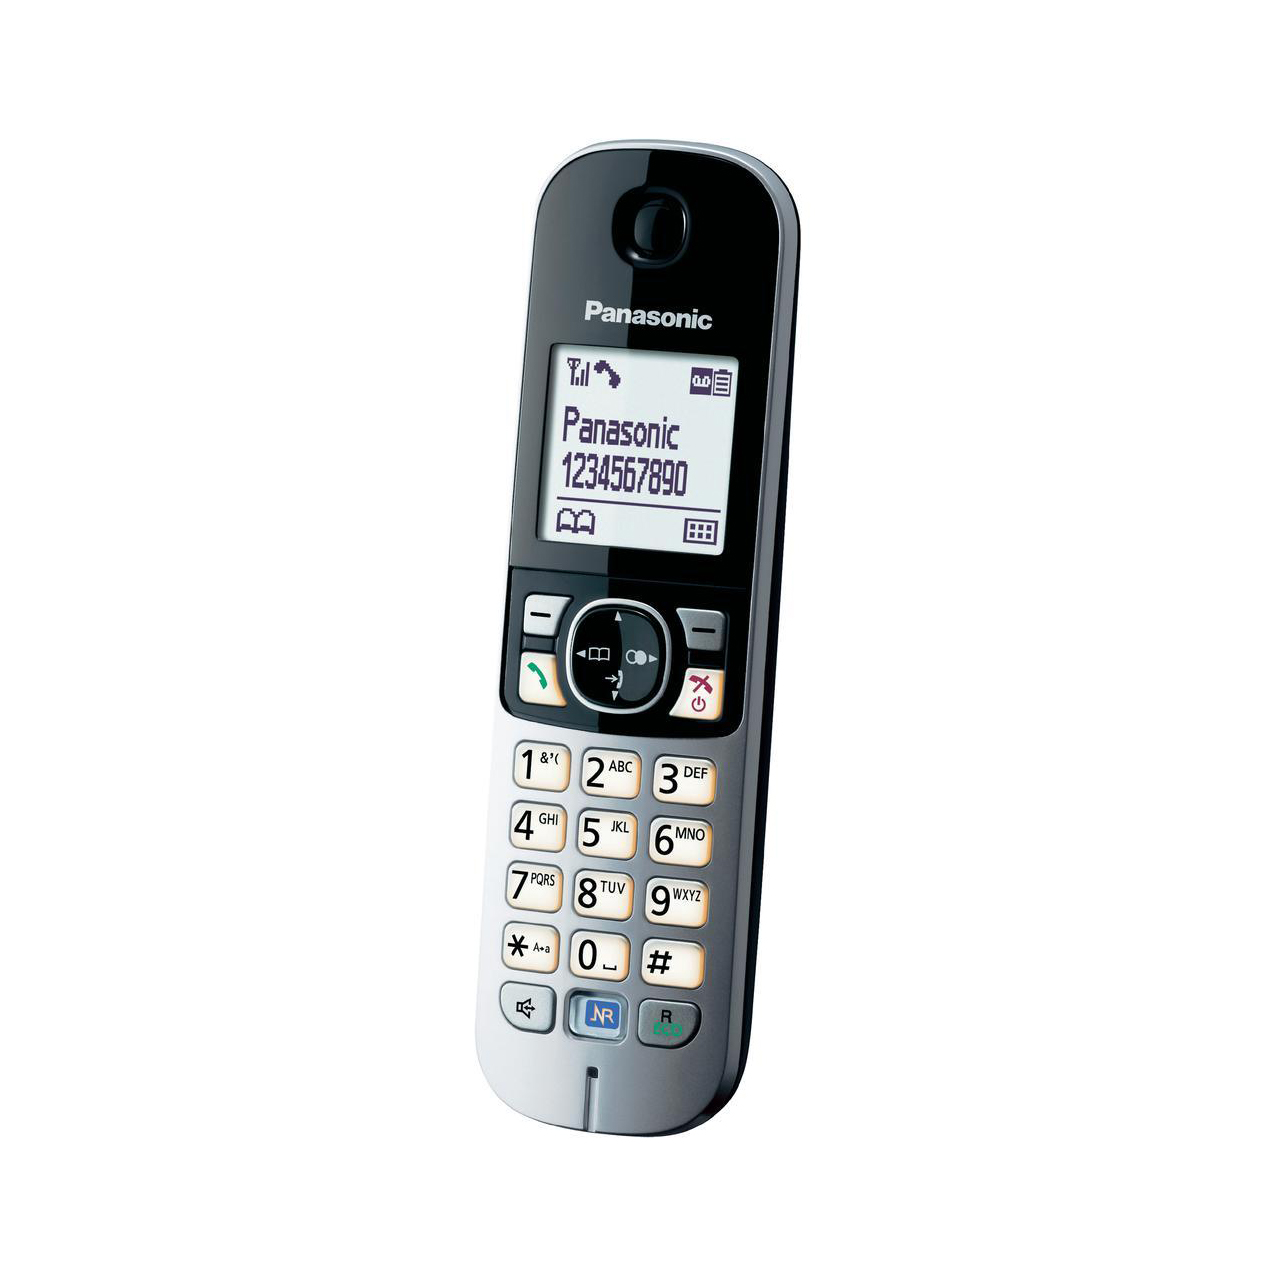 تلفن بیسیم پاناسونیک مدل Panasonic-KX-TG6821 ساخت مالزی